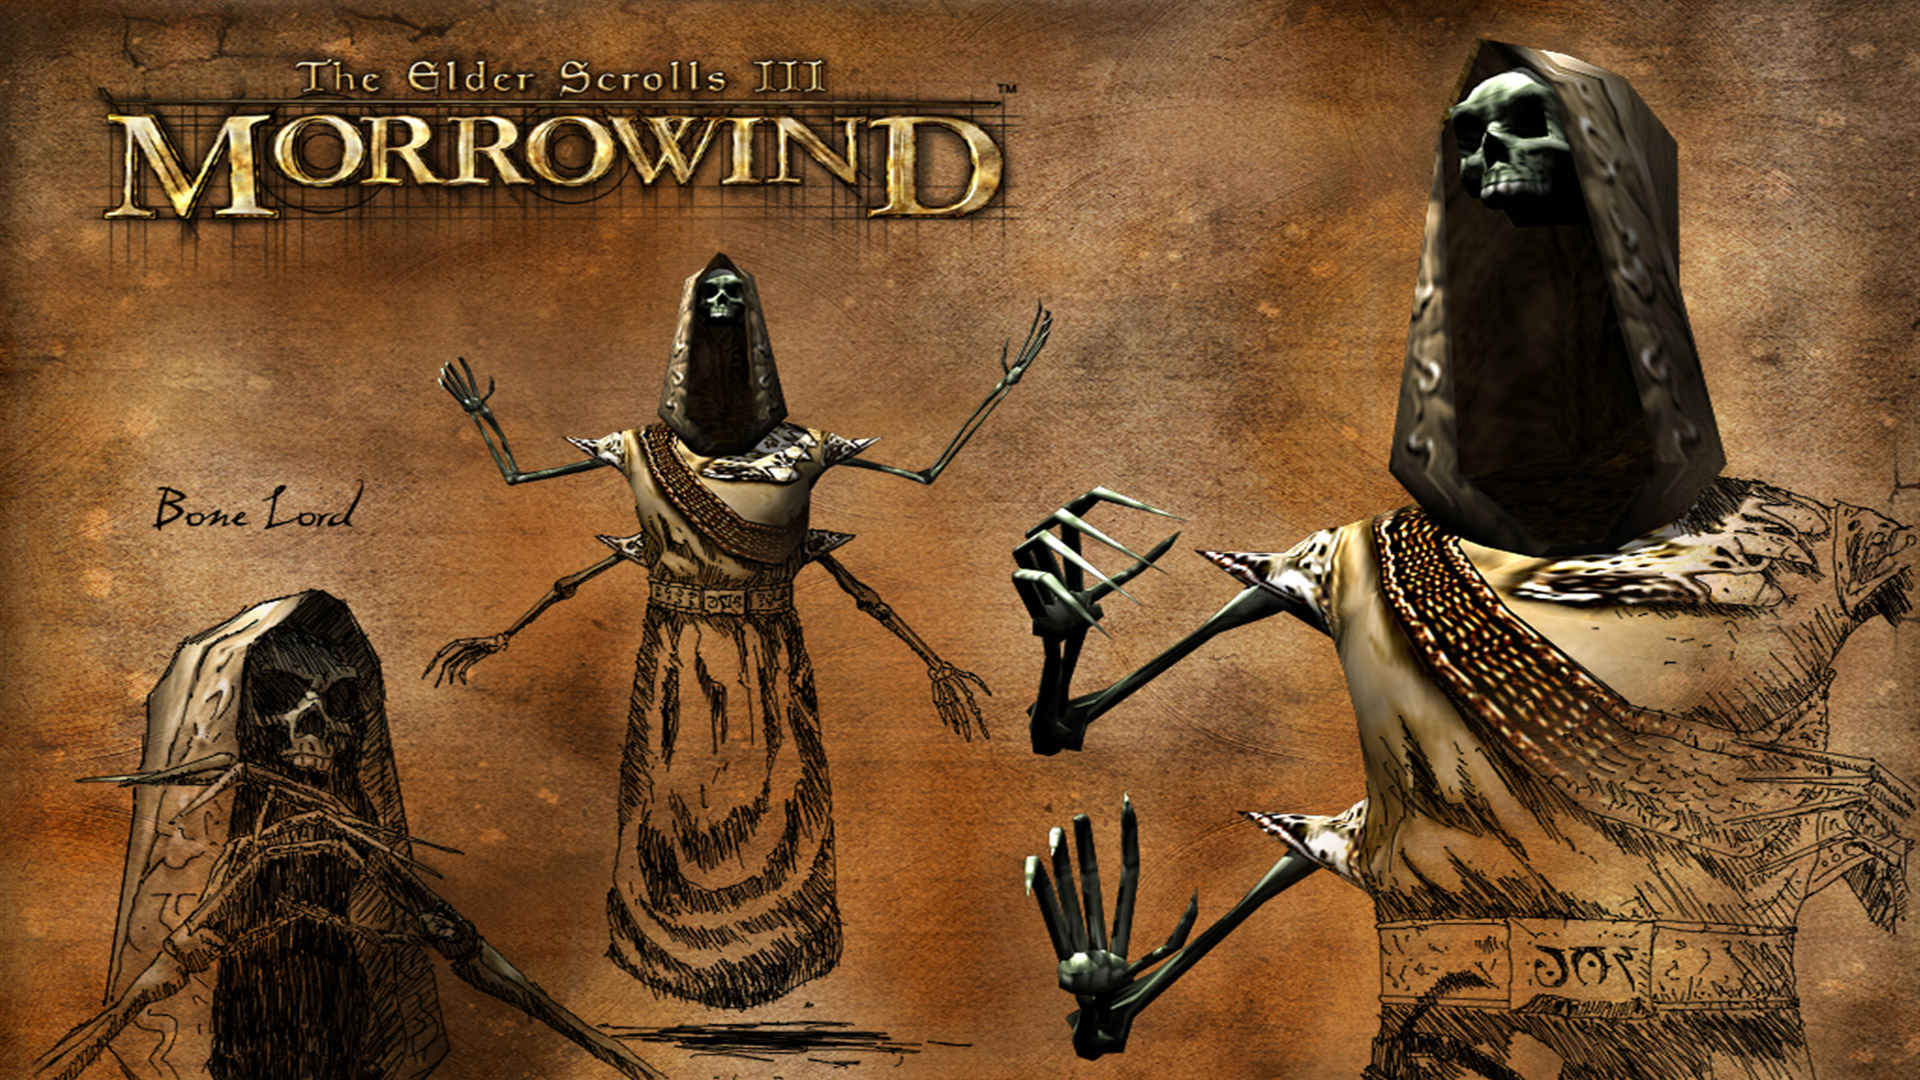 Bonelord Morrowind , HD Wallpaper & Backgrounds